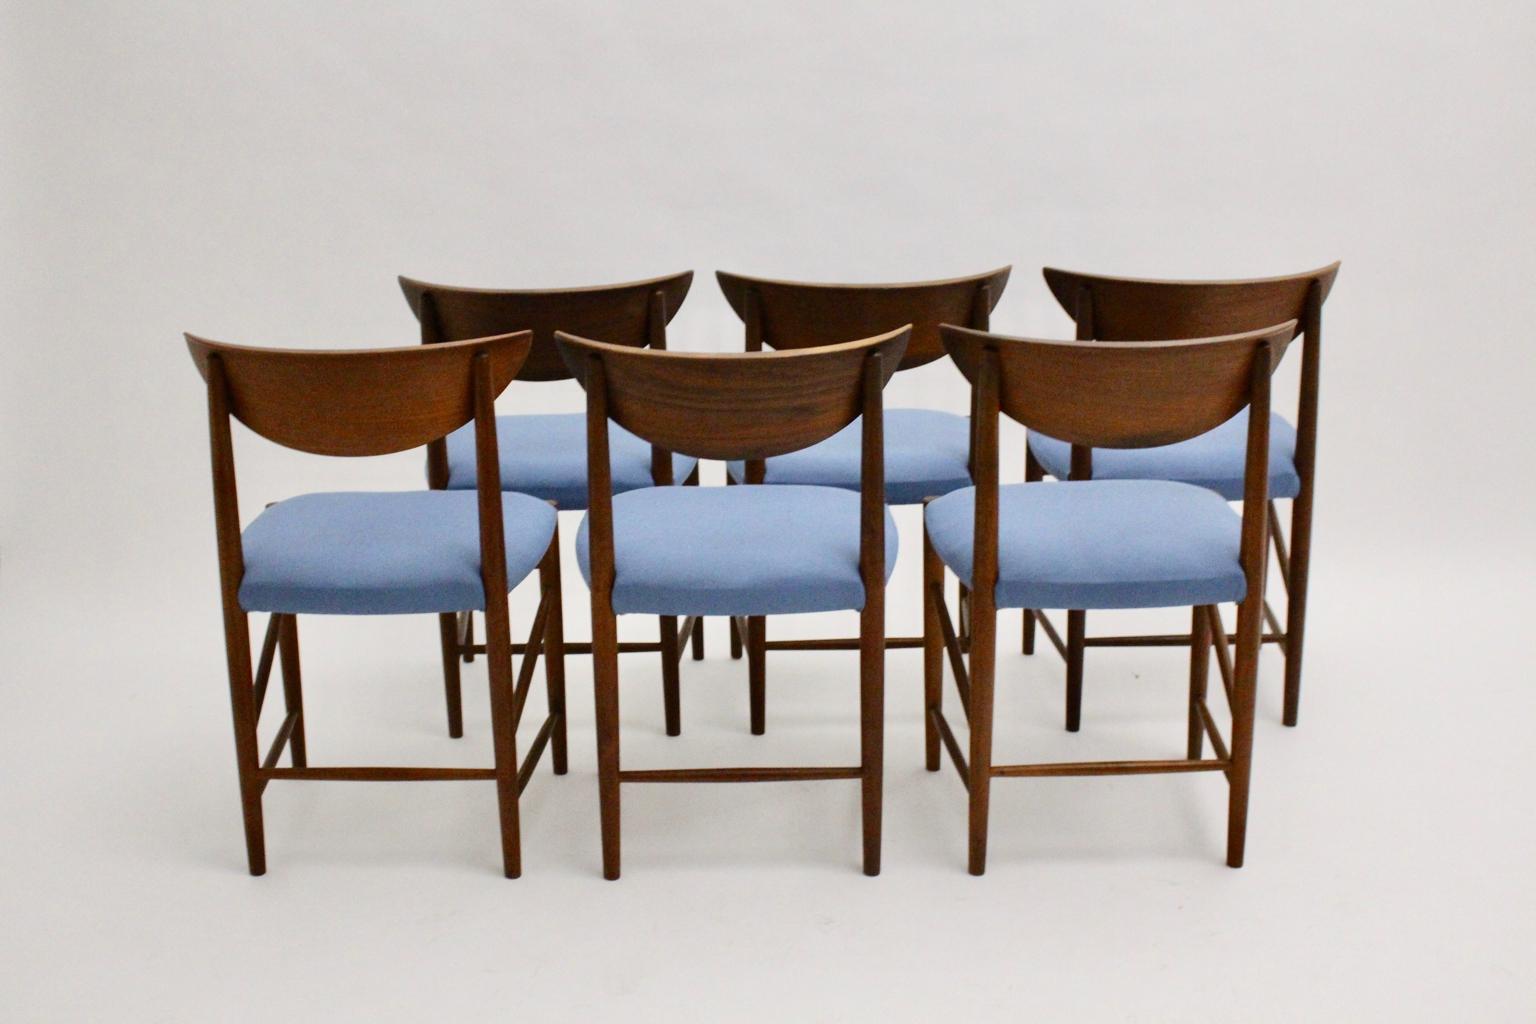 Chaises de salle à manger organiques scandinaves Modernes vintage ou chaises en teck conçues par Peter Hvidt et Orla Moolgard Nielsen pour Søborg Mobler DK, vers 1956.
Ces merveilleuses chaises de salle à manger sont dotées d'un cadre sculptural en